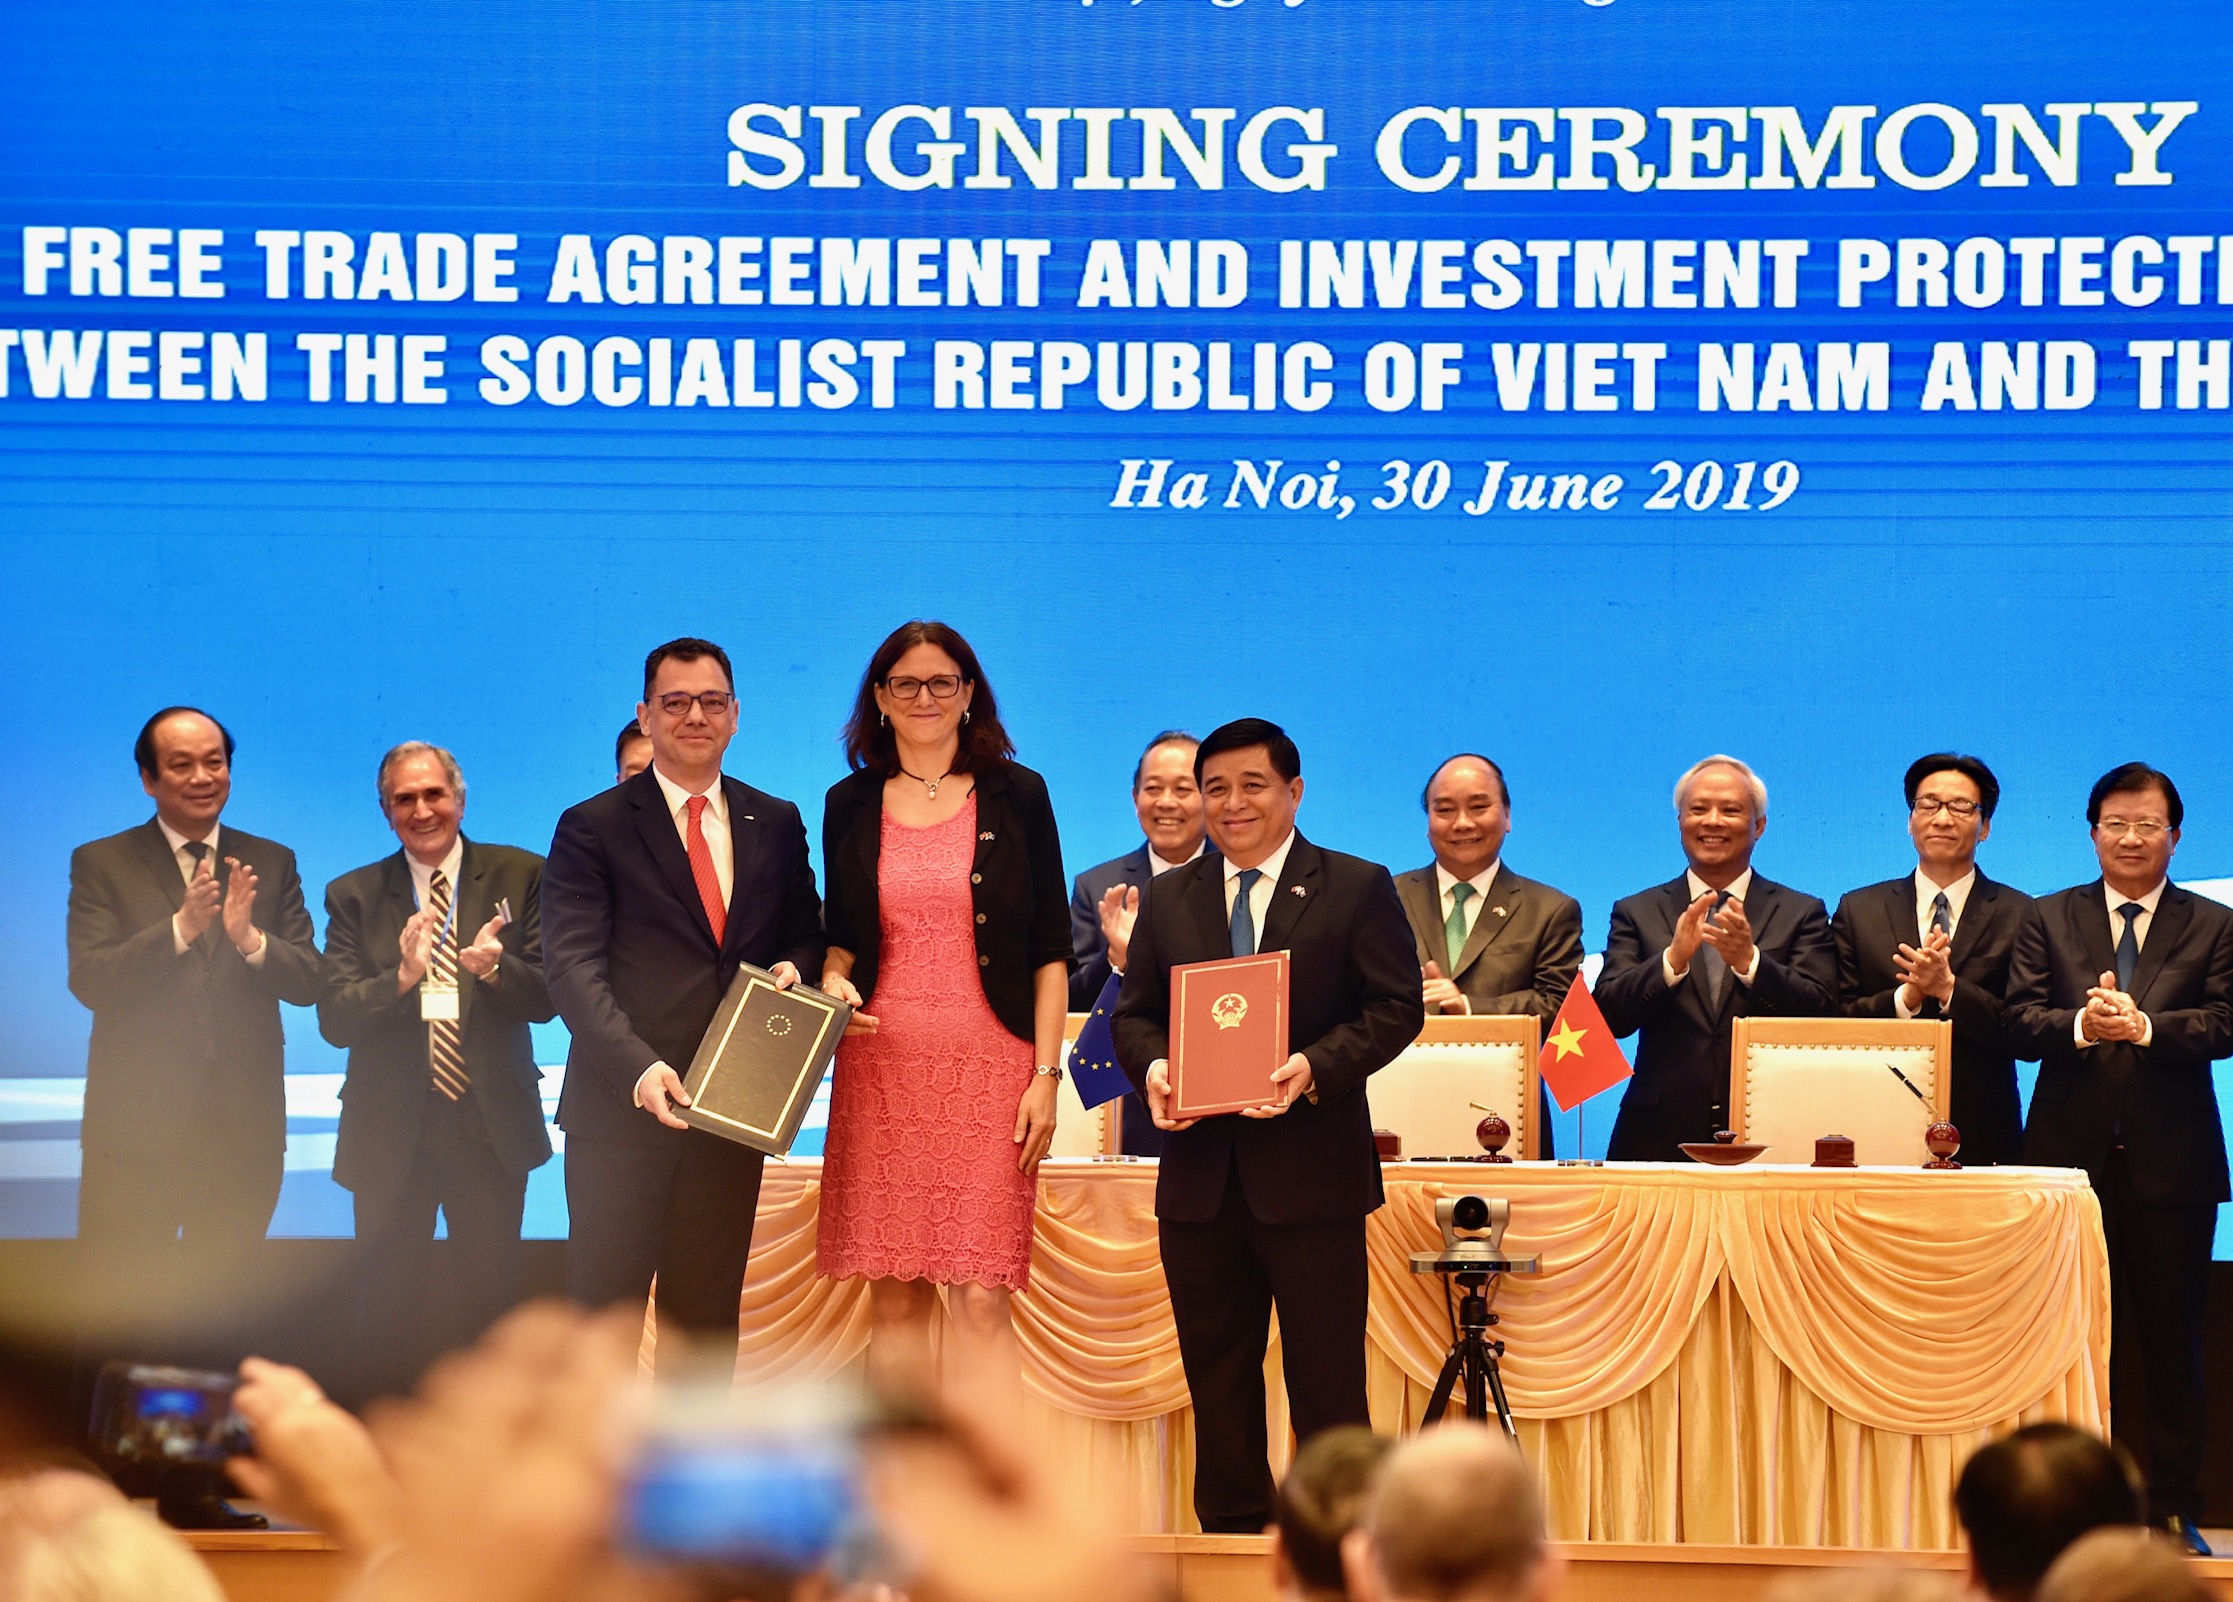 Hiệp định EVFTA và Hiệp định IPA giữa Việt Nam và Liên minh Châu Âu đã được ký kết - Ảnh 1